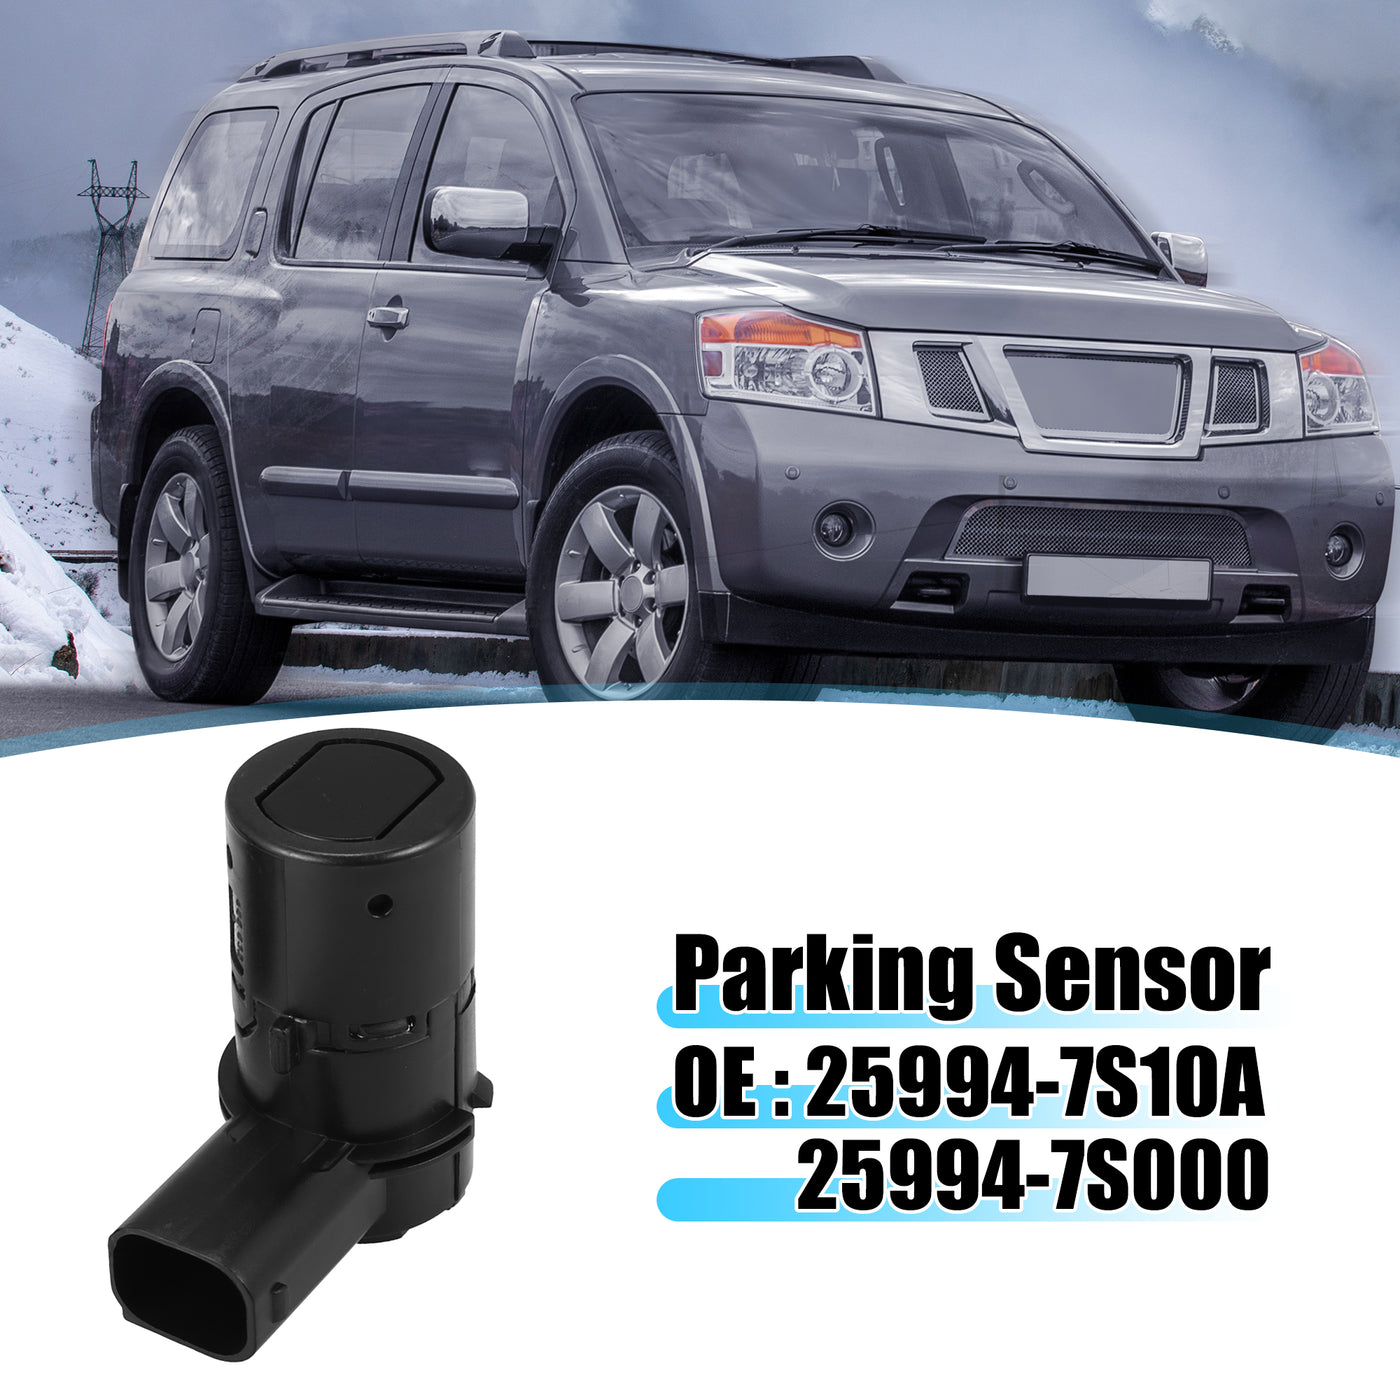 X AUTOHAUX 4 Pcs Car Bumper PDC Reverse Parking Assist Sensor for Nissan Titan 2005-2011 for Nissan Armada 2005-2011 25994-7S10A 25994-7S000